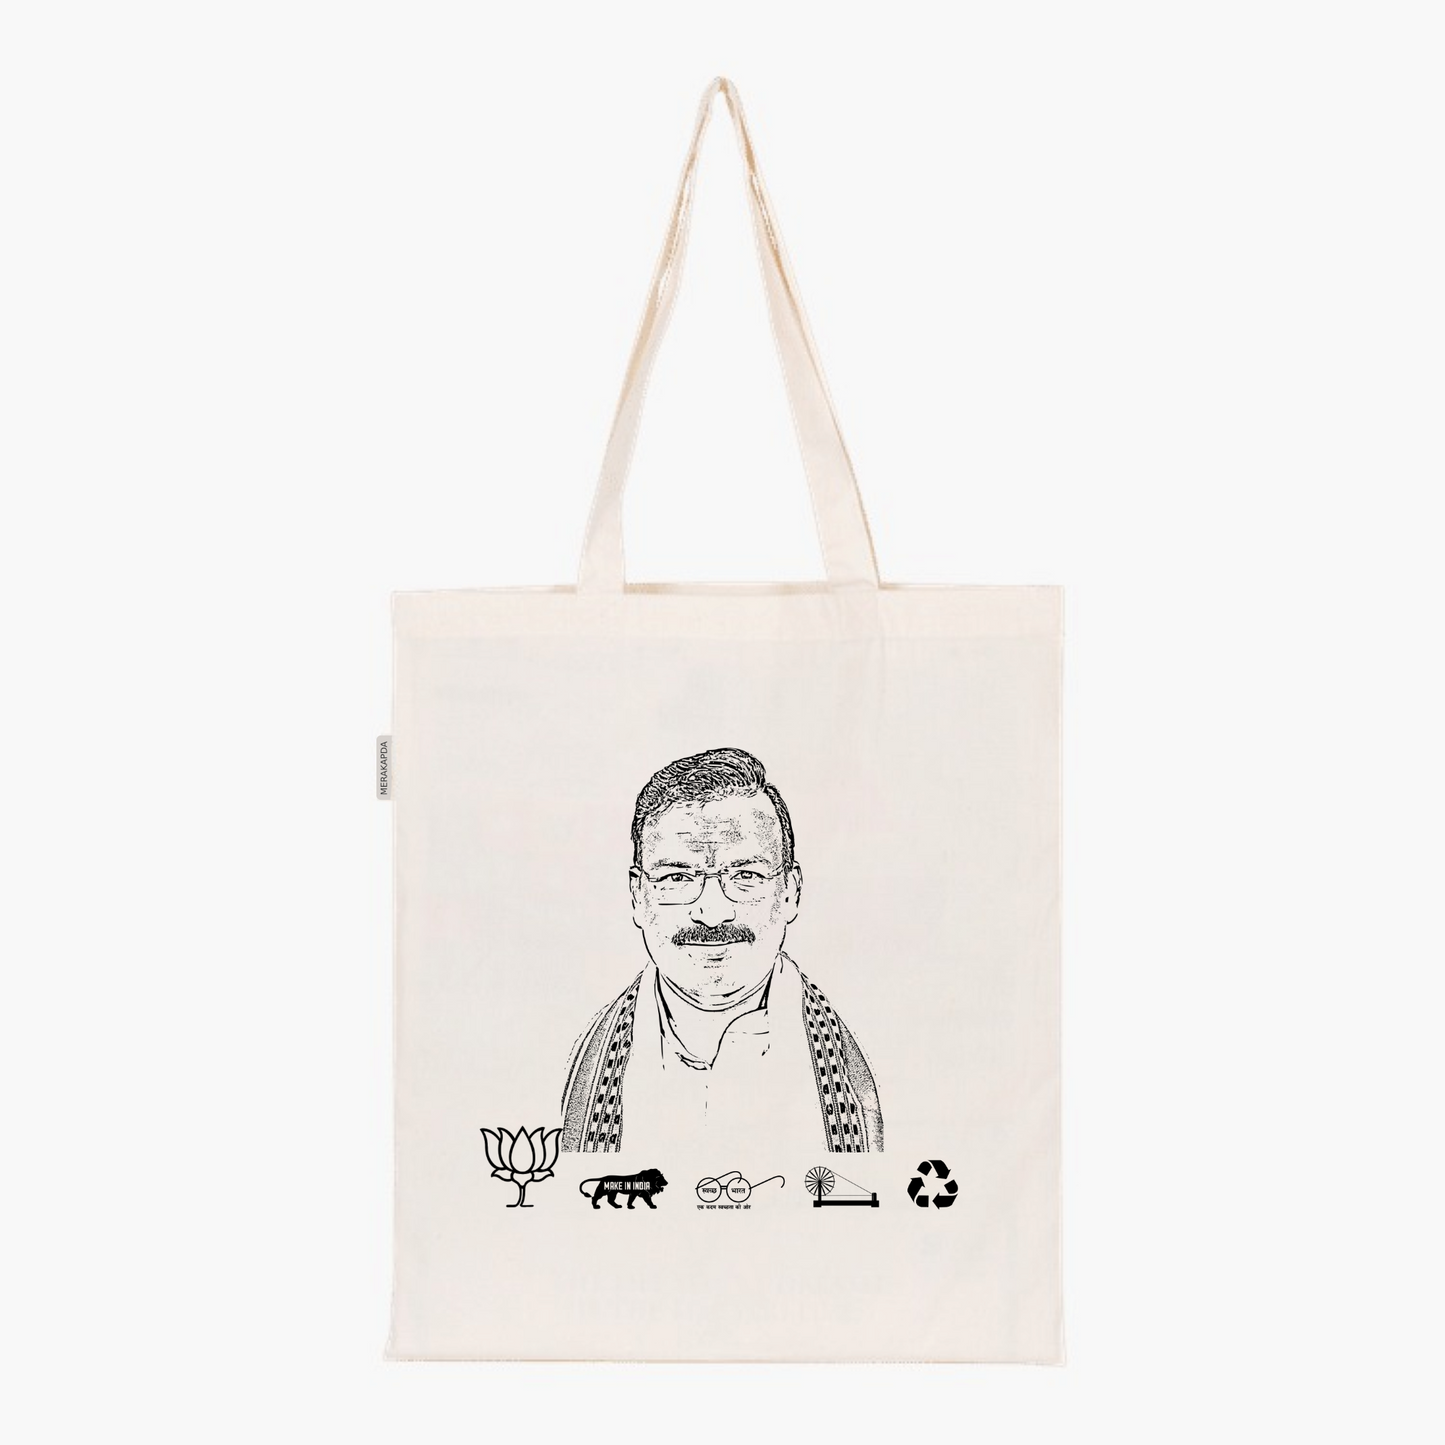 Printed Natural Tote Bag (Shri Gajendra Patel)